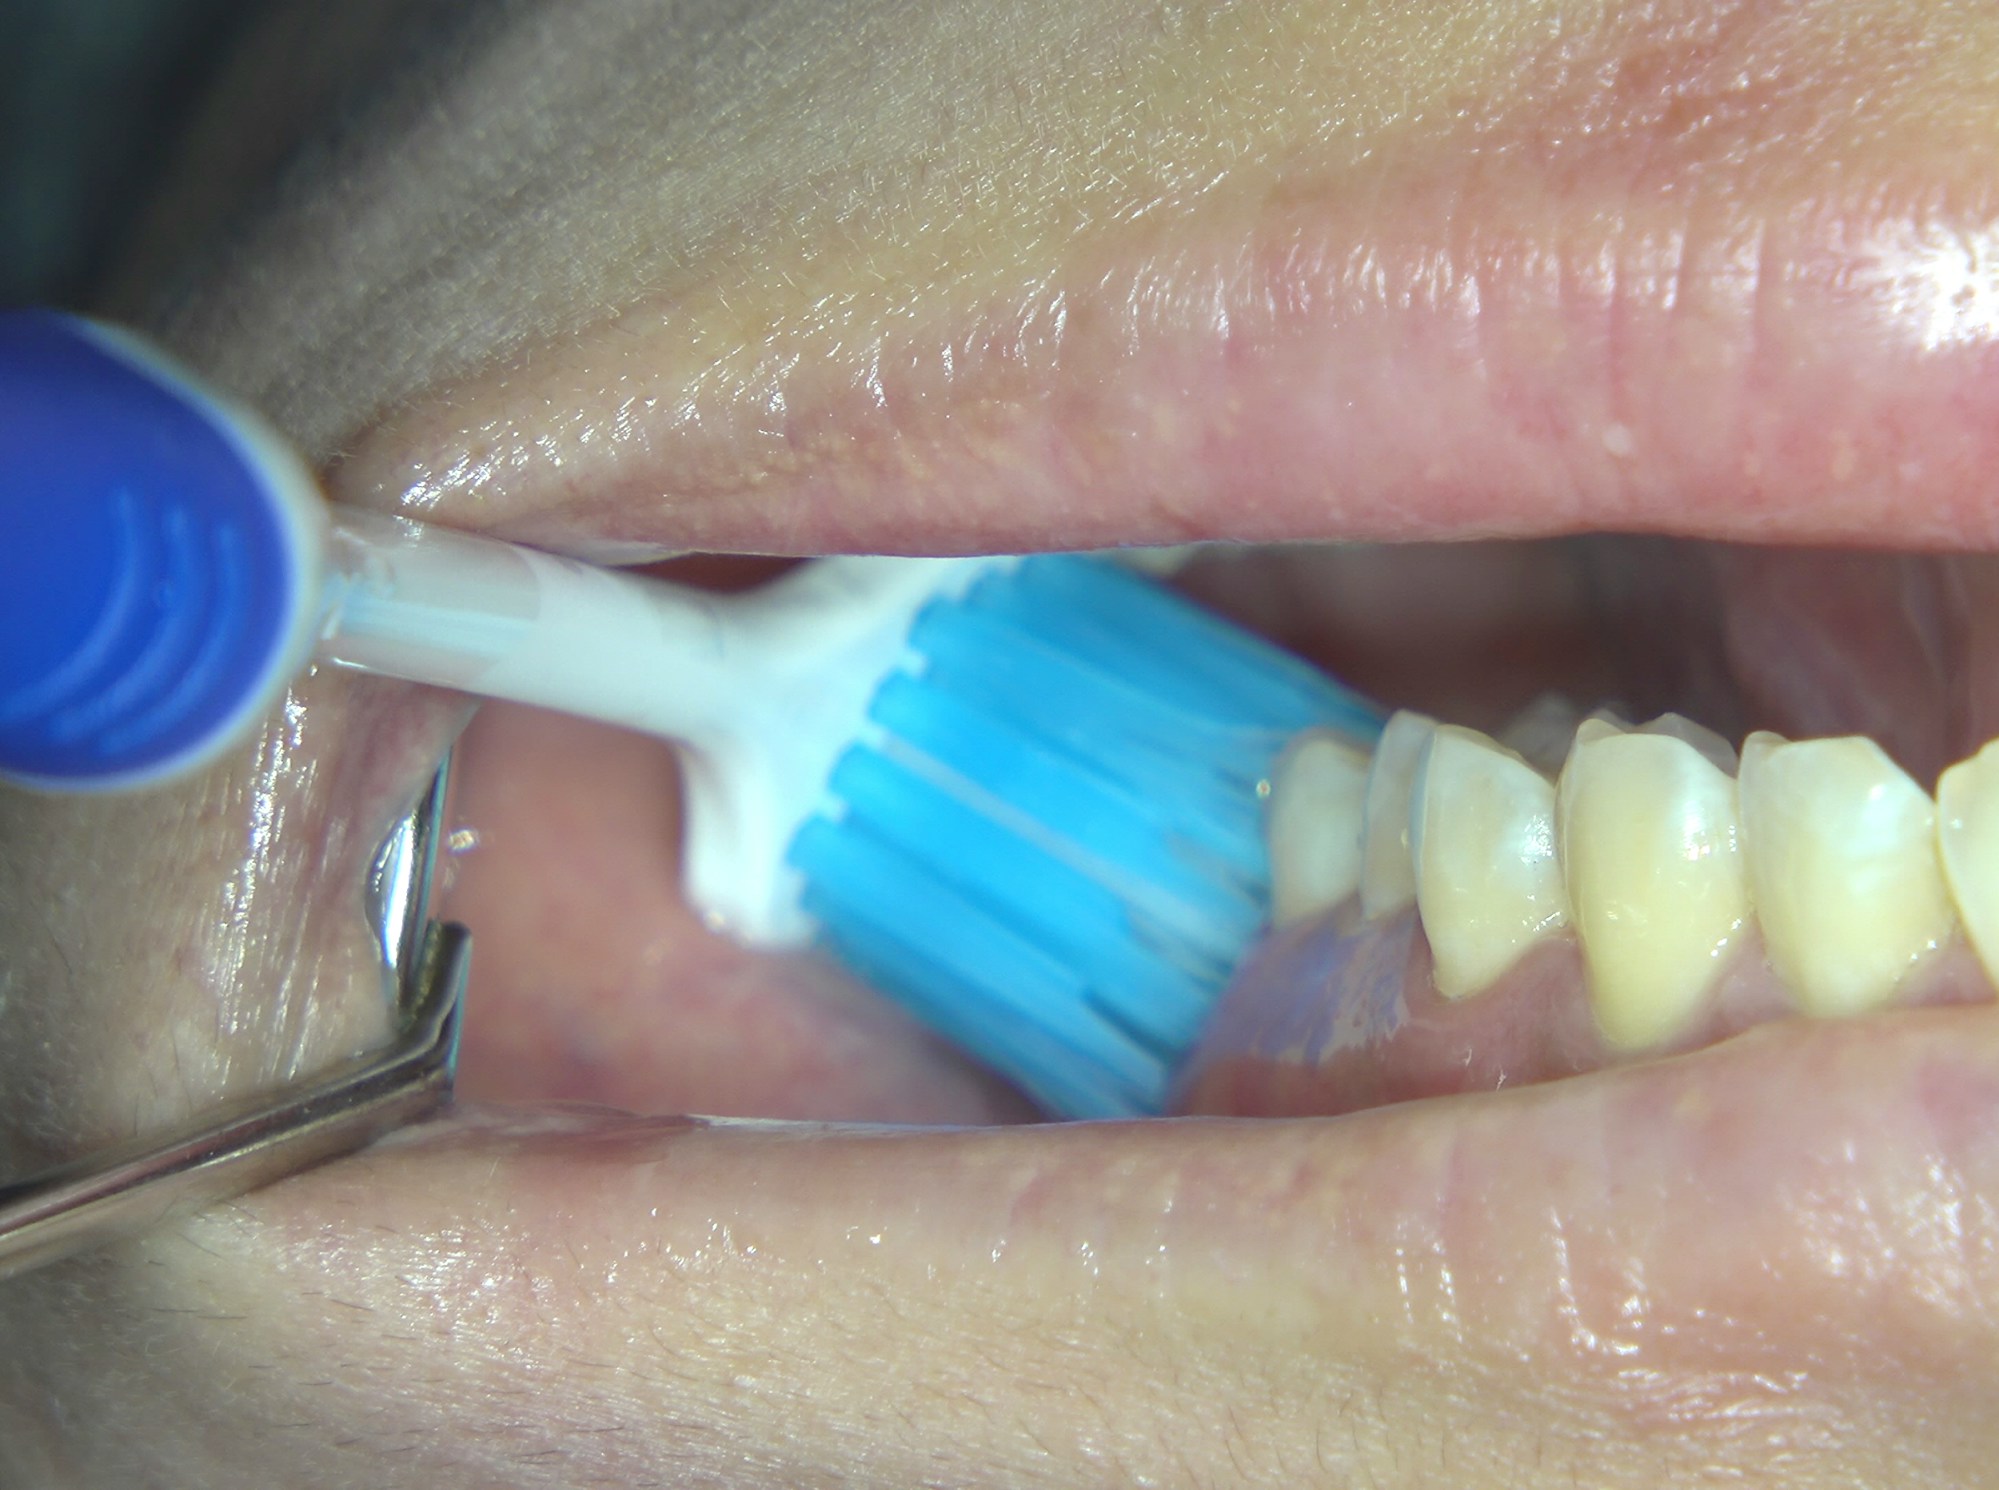 將口腔微微合起來 
上顎臼齒外側面會有更多空間更容易清潔乾淨